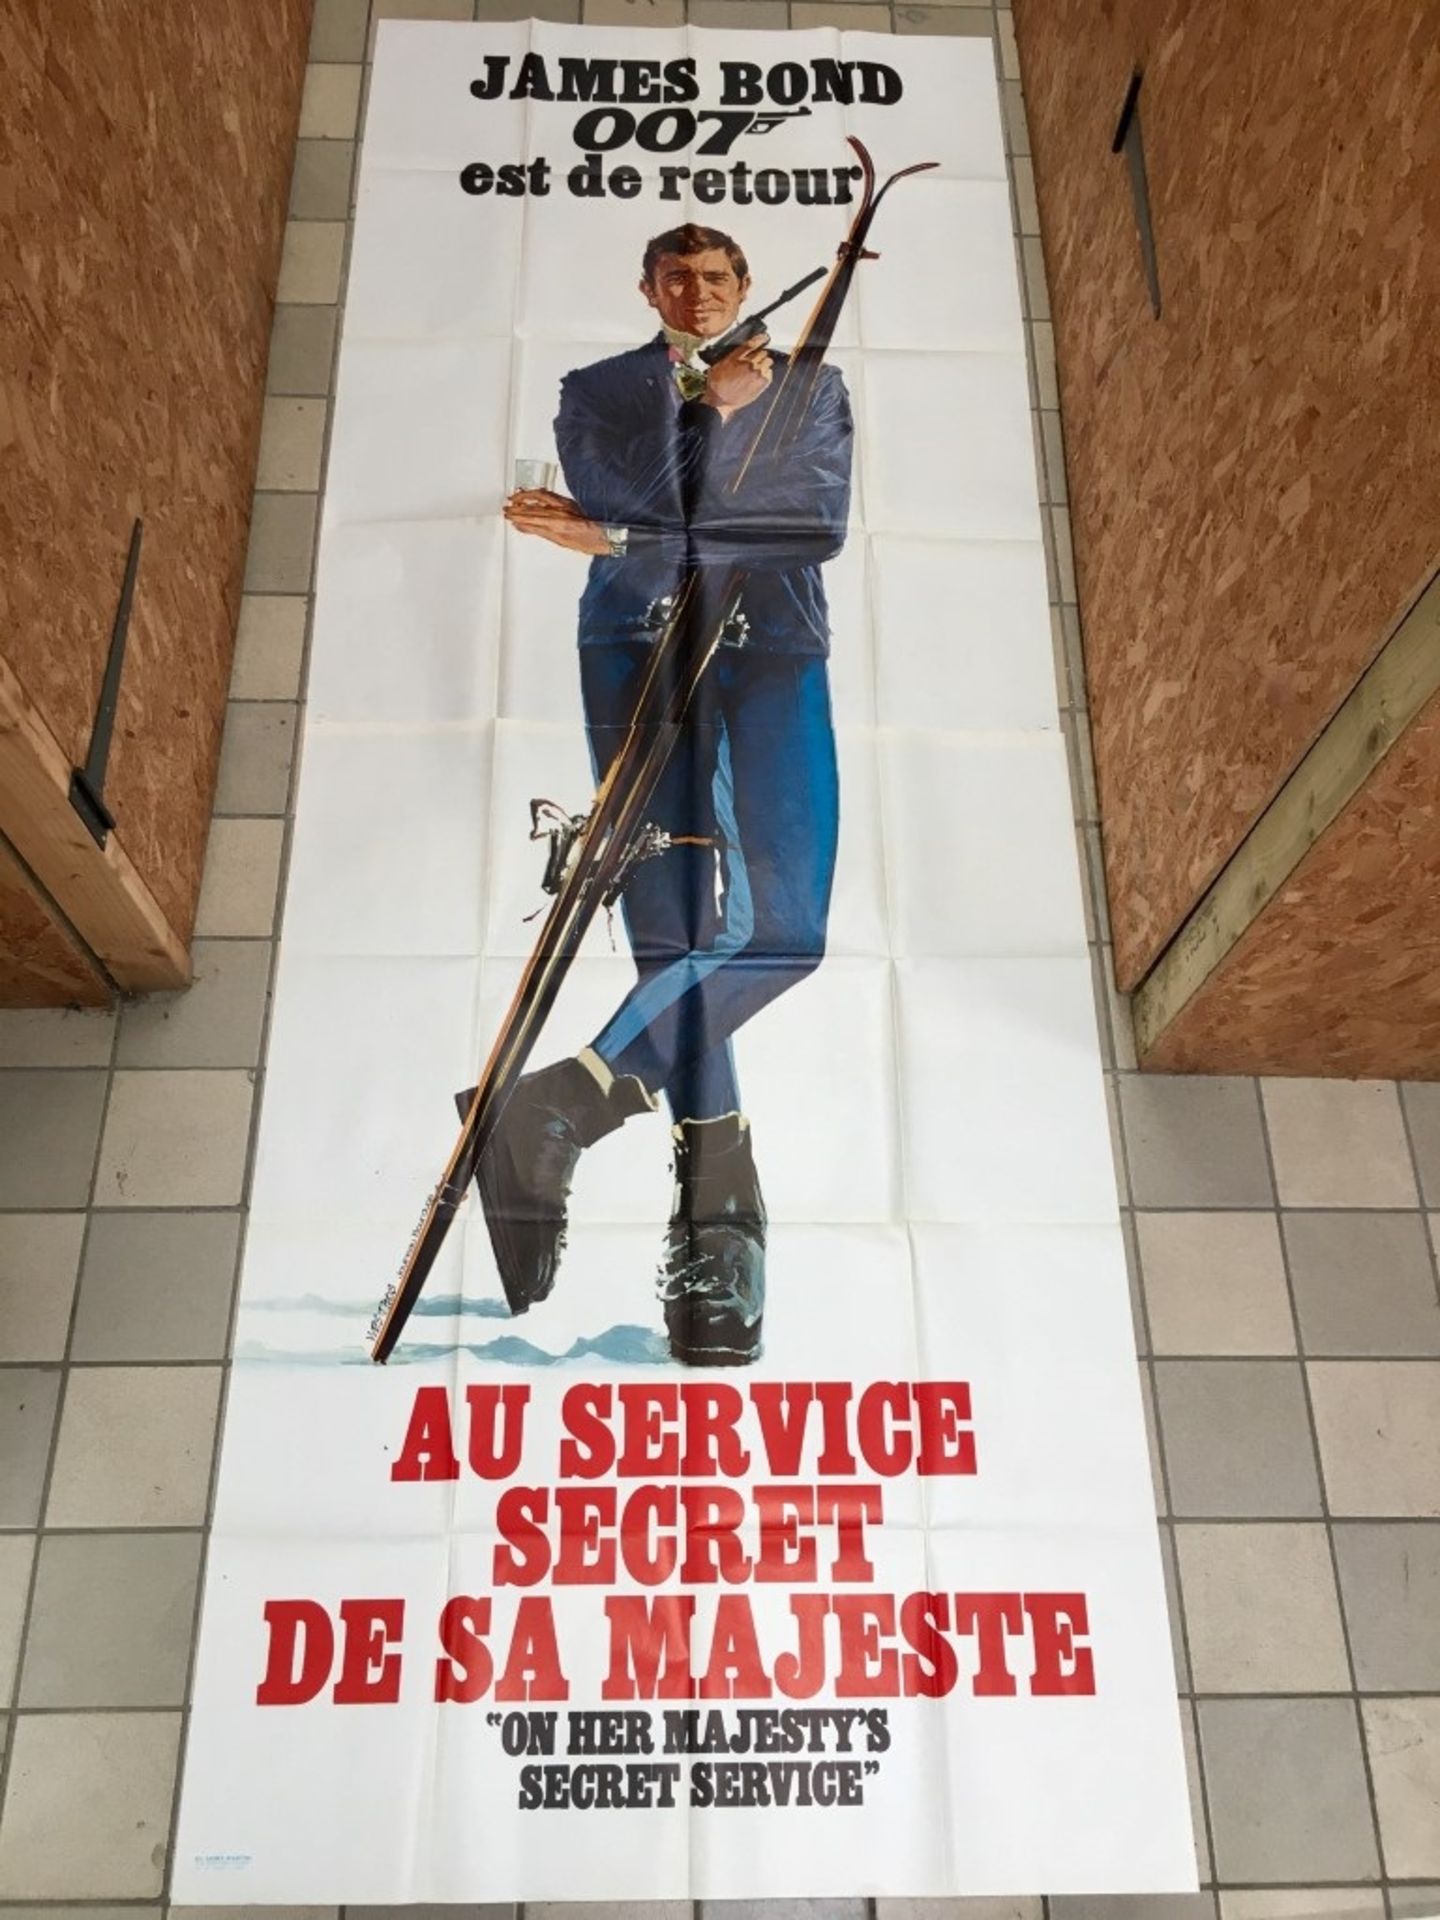 On Her Majesty's Secret Service poster